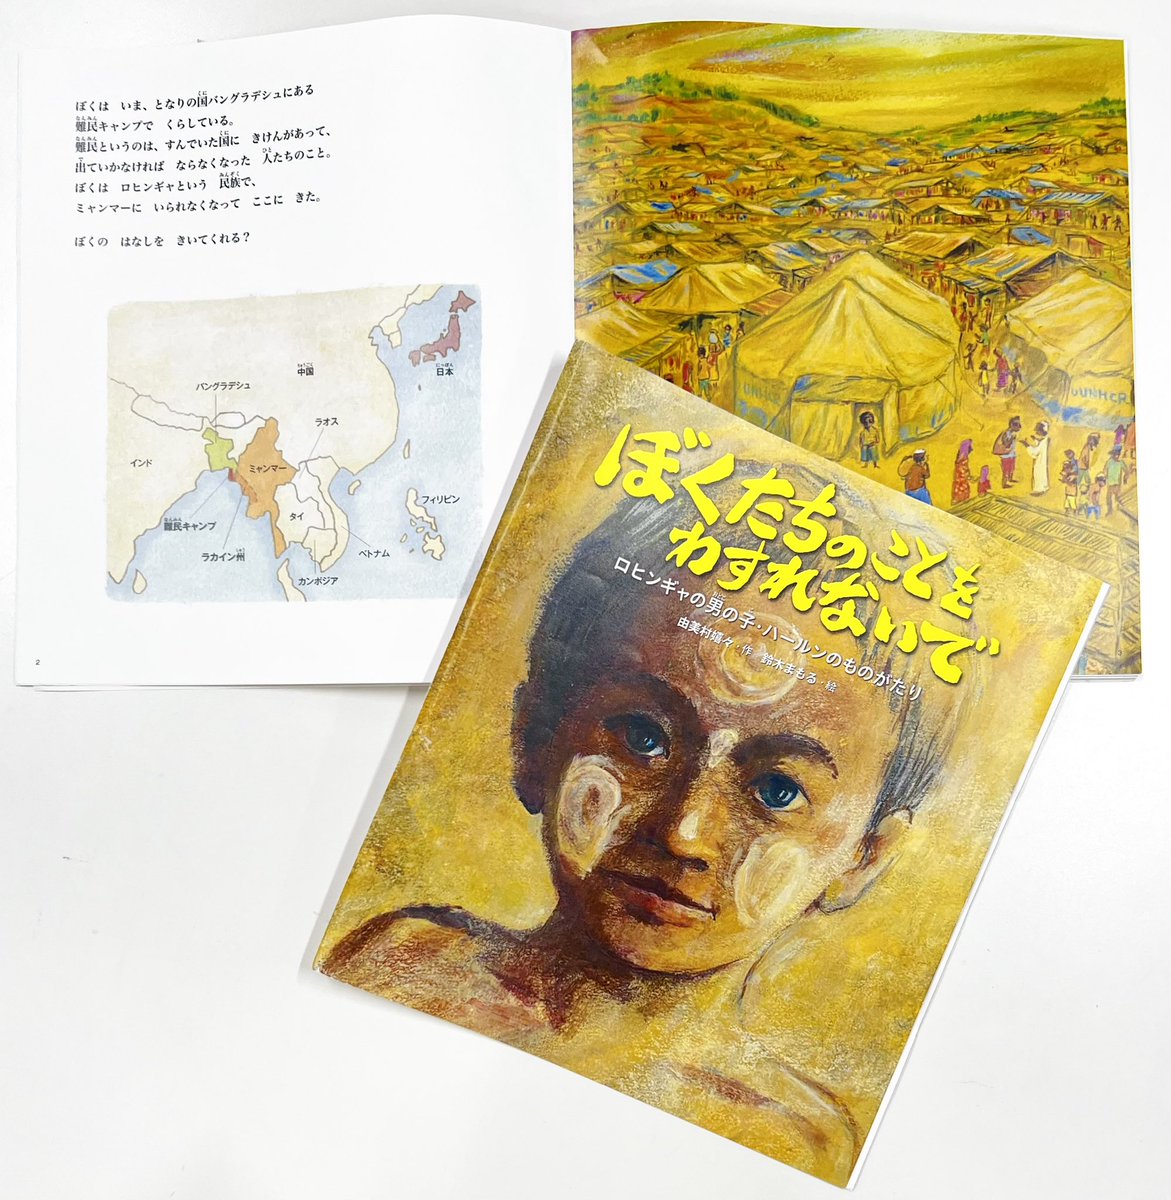 6月中旬に発売予定の絵本
『ぼくたちのことをわすれないで』
作者は #由美村嬉々 さんと #鈴木まもる さん。ロヒンギャの男の子・ハールンのものがたりです。
6/20世界難民の日に合わせて発刊されます。
表紙の男の子がハールン。辛い生活の中での唯一の希望は、難民キャンプにできた学校でしたーー